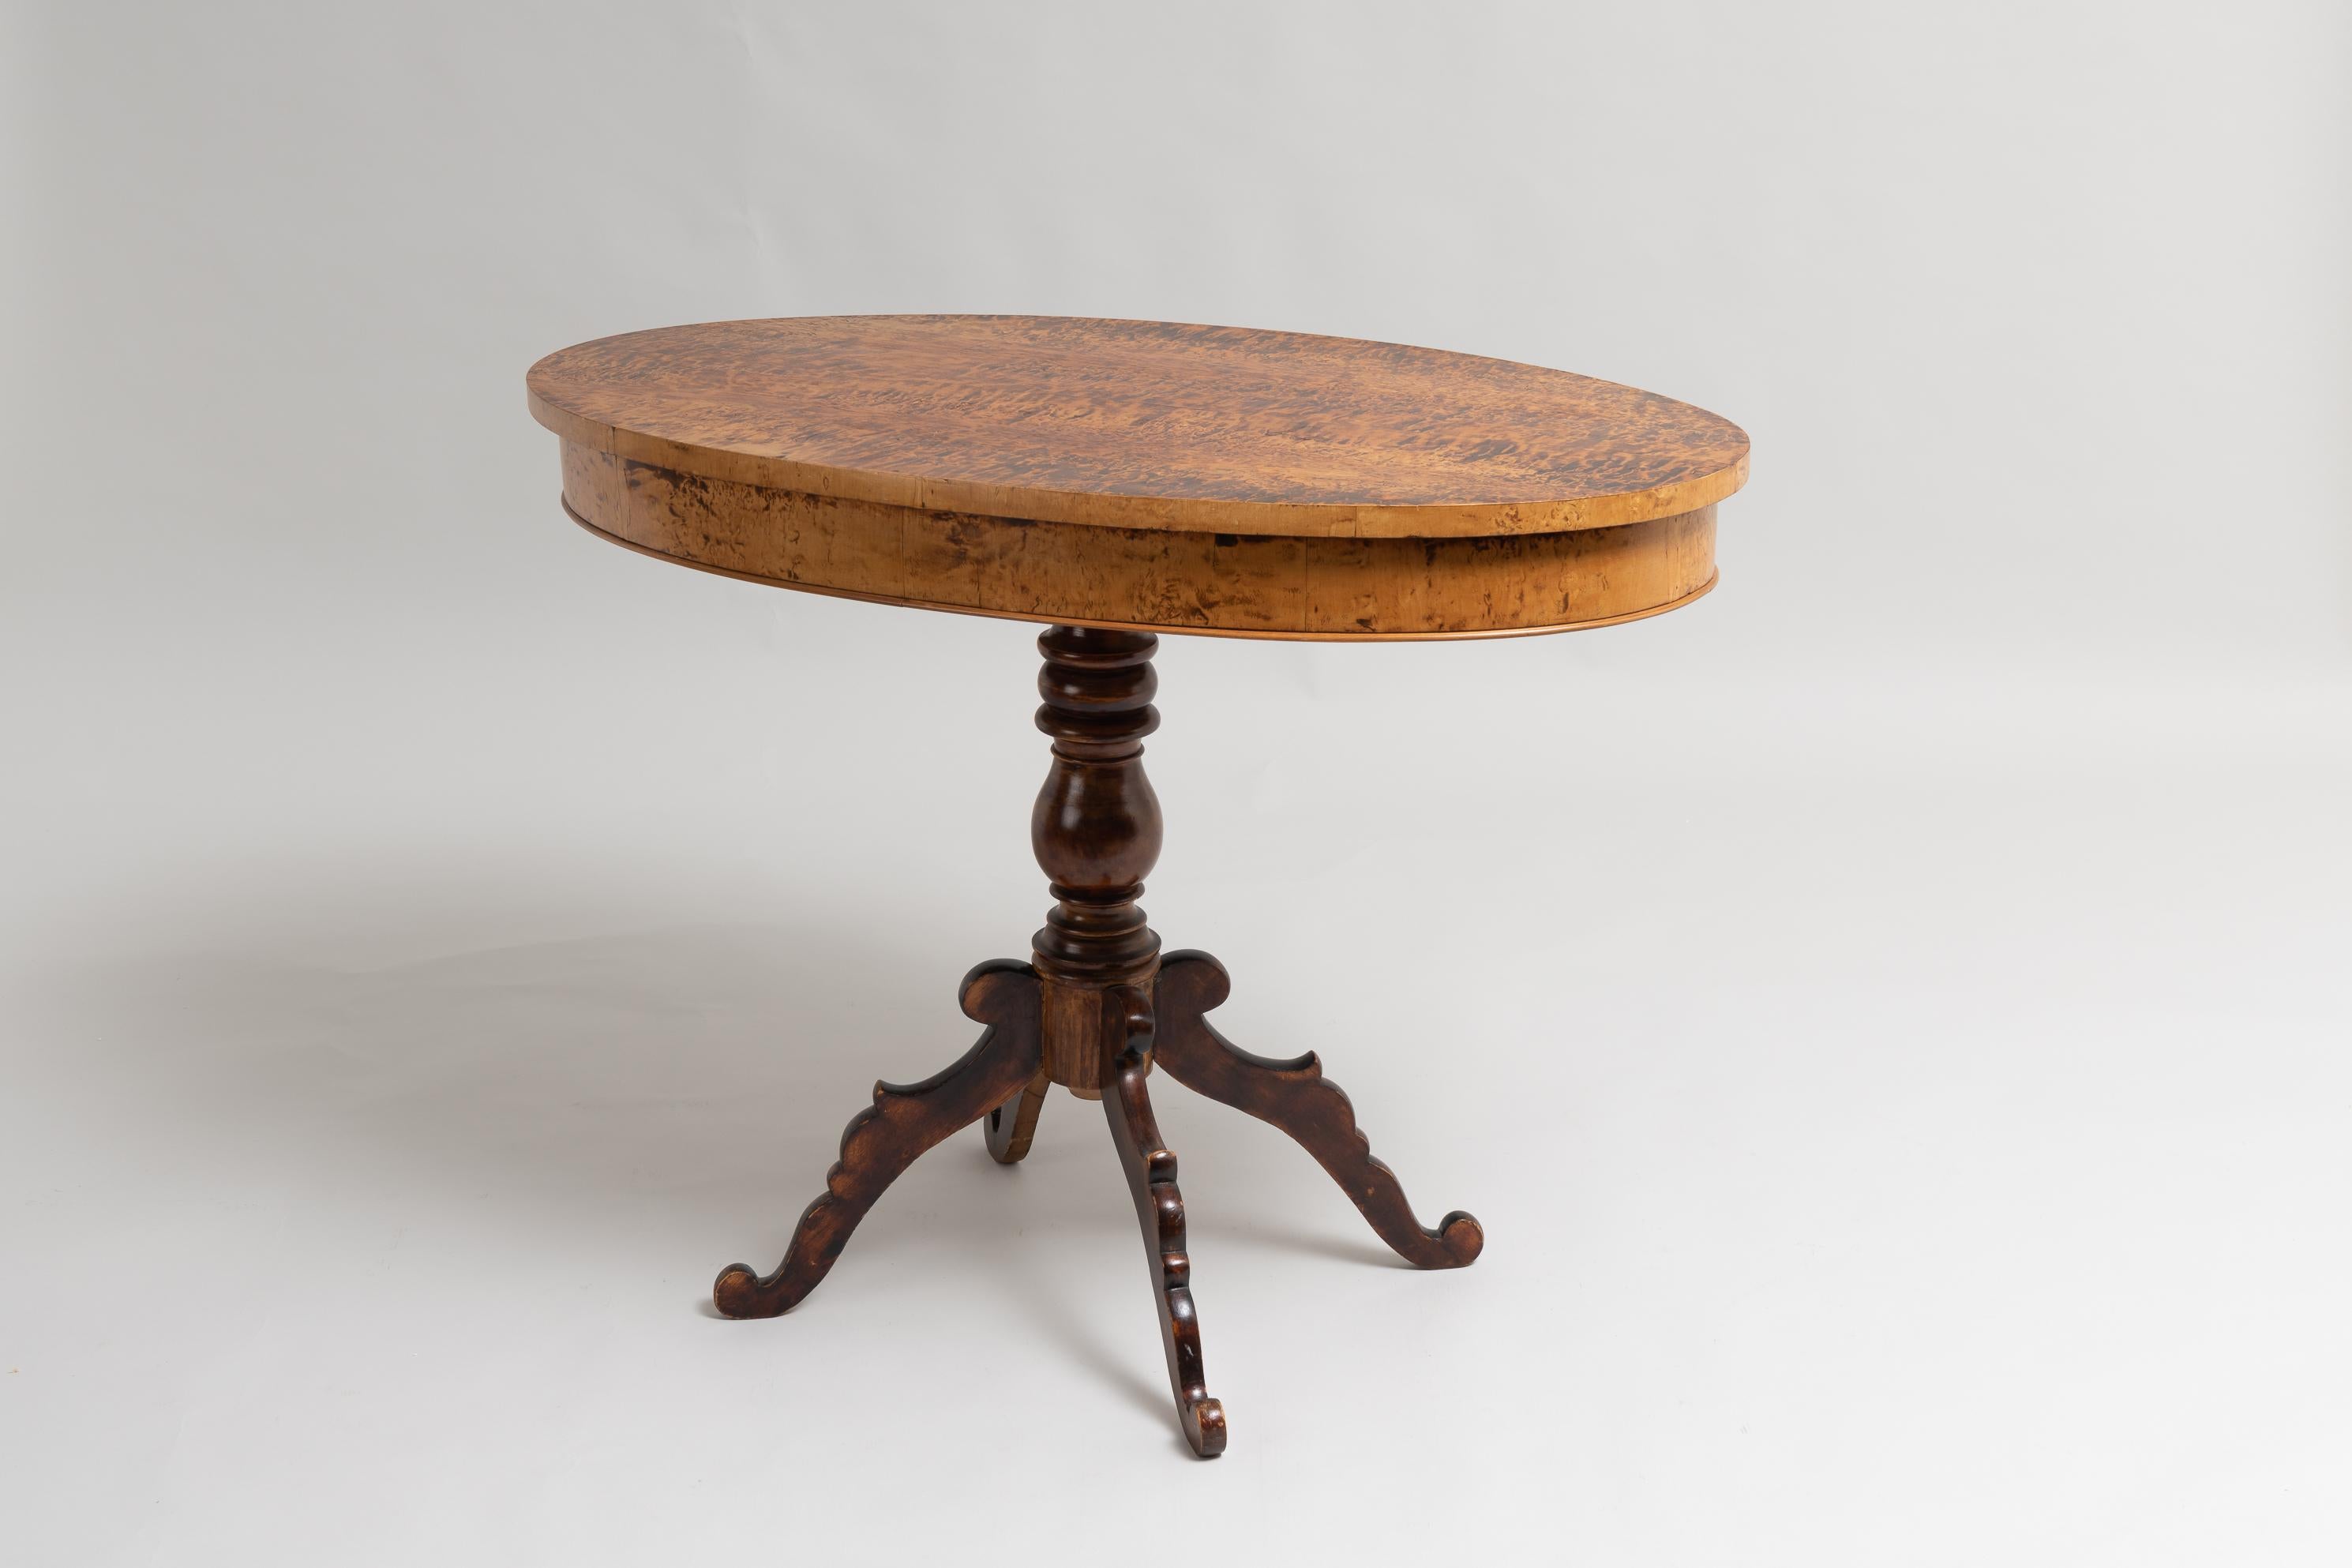 Table centrale de style néo-rococo, fabriquée en Suède entre 1860 et 1870. La table a une base à colonne unique avec 4 pieds et un dessus de table ovale. Le plateau de la table est plaqué de racines de bouleau et la surface a été traitée pour que le